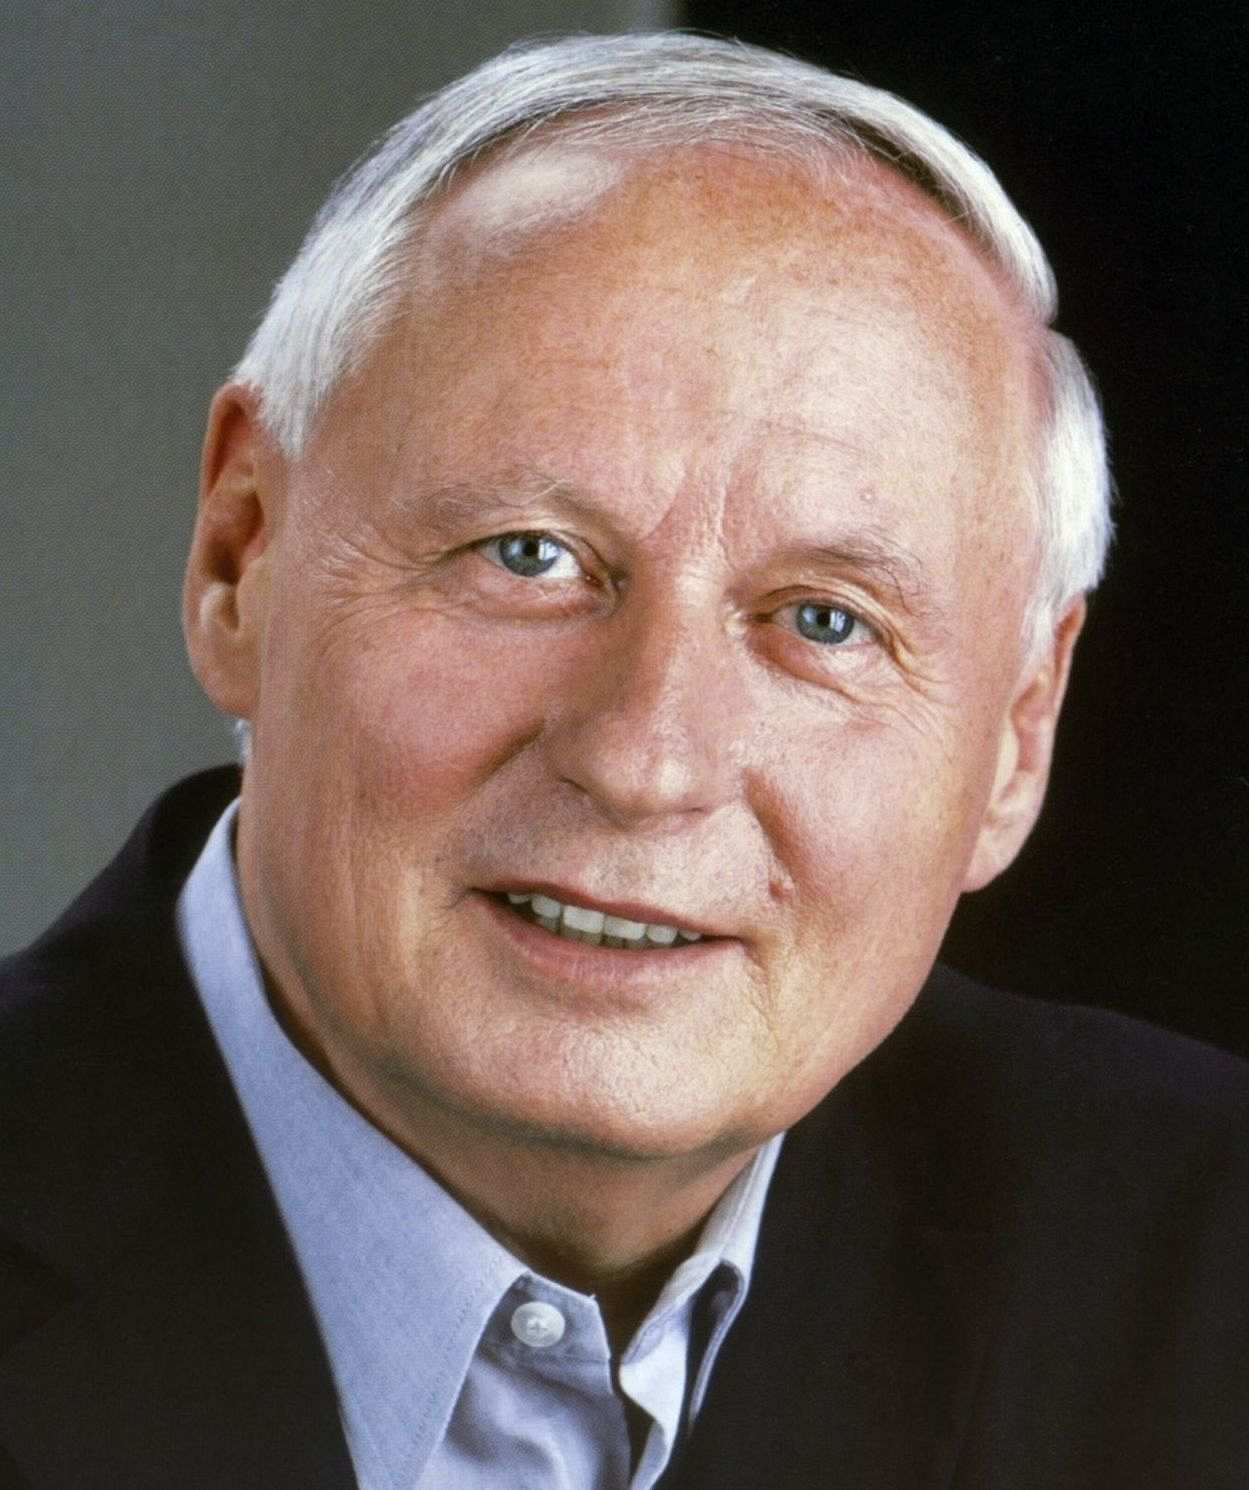 Porträt des Politikers Oskar Lafontaine, einige Monate vor der Bundestagswahl 2005, in der das Wahlbündnis 